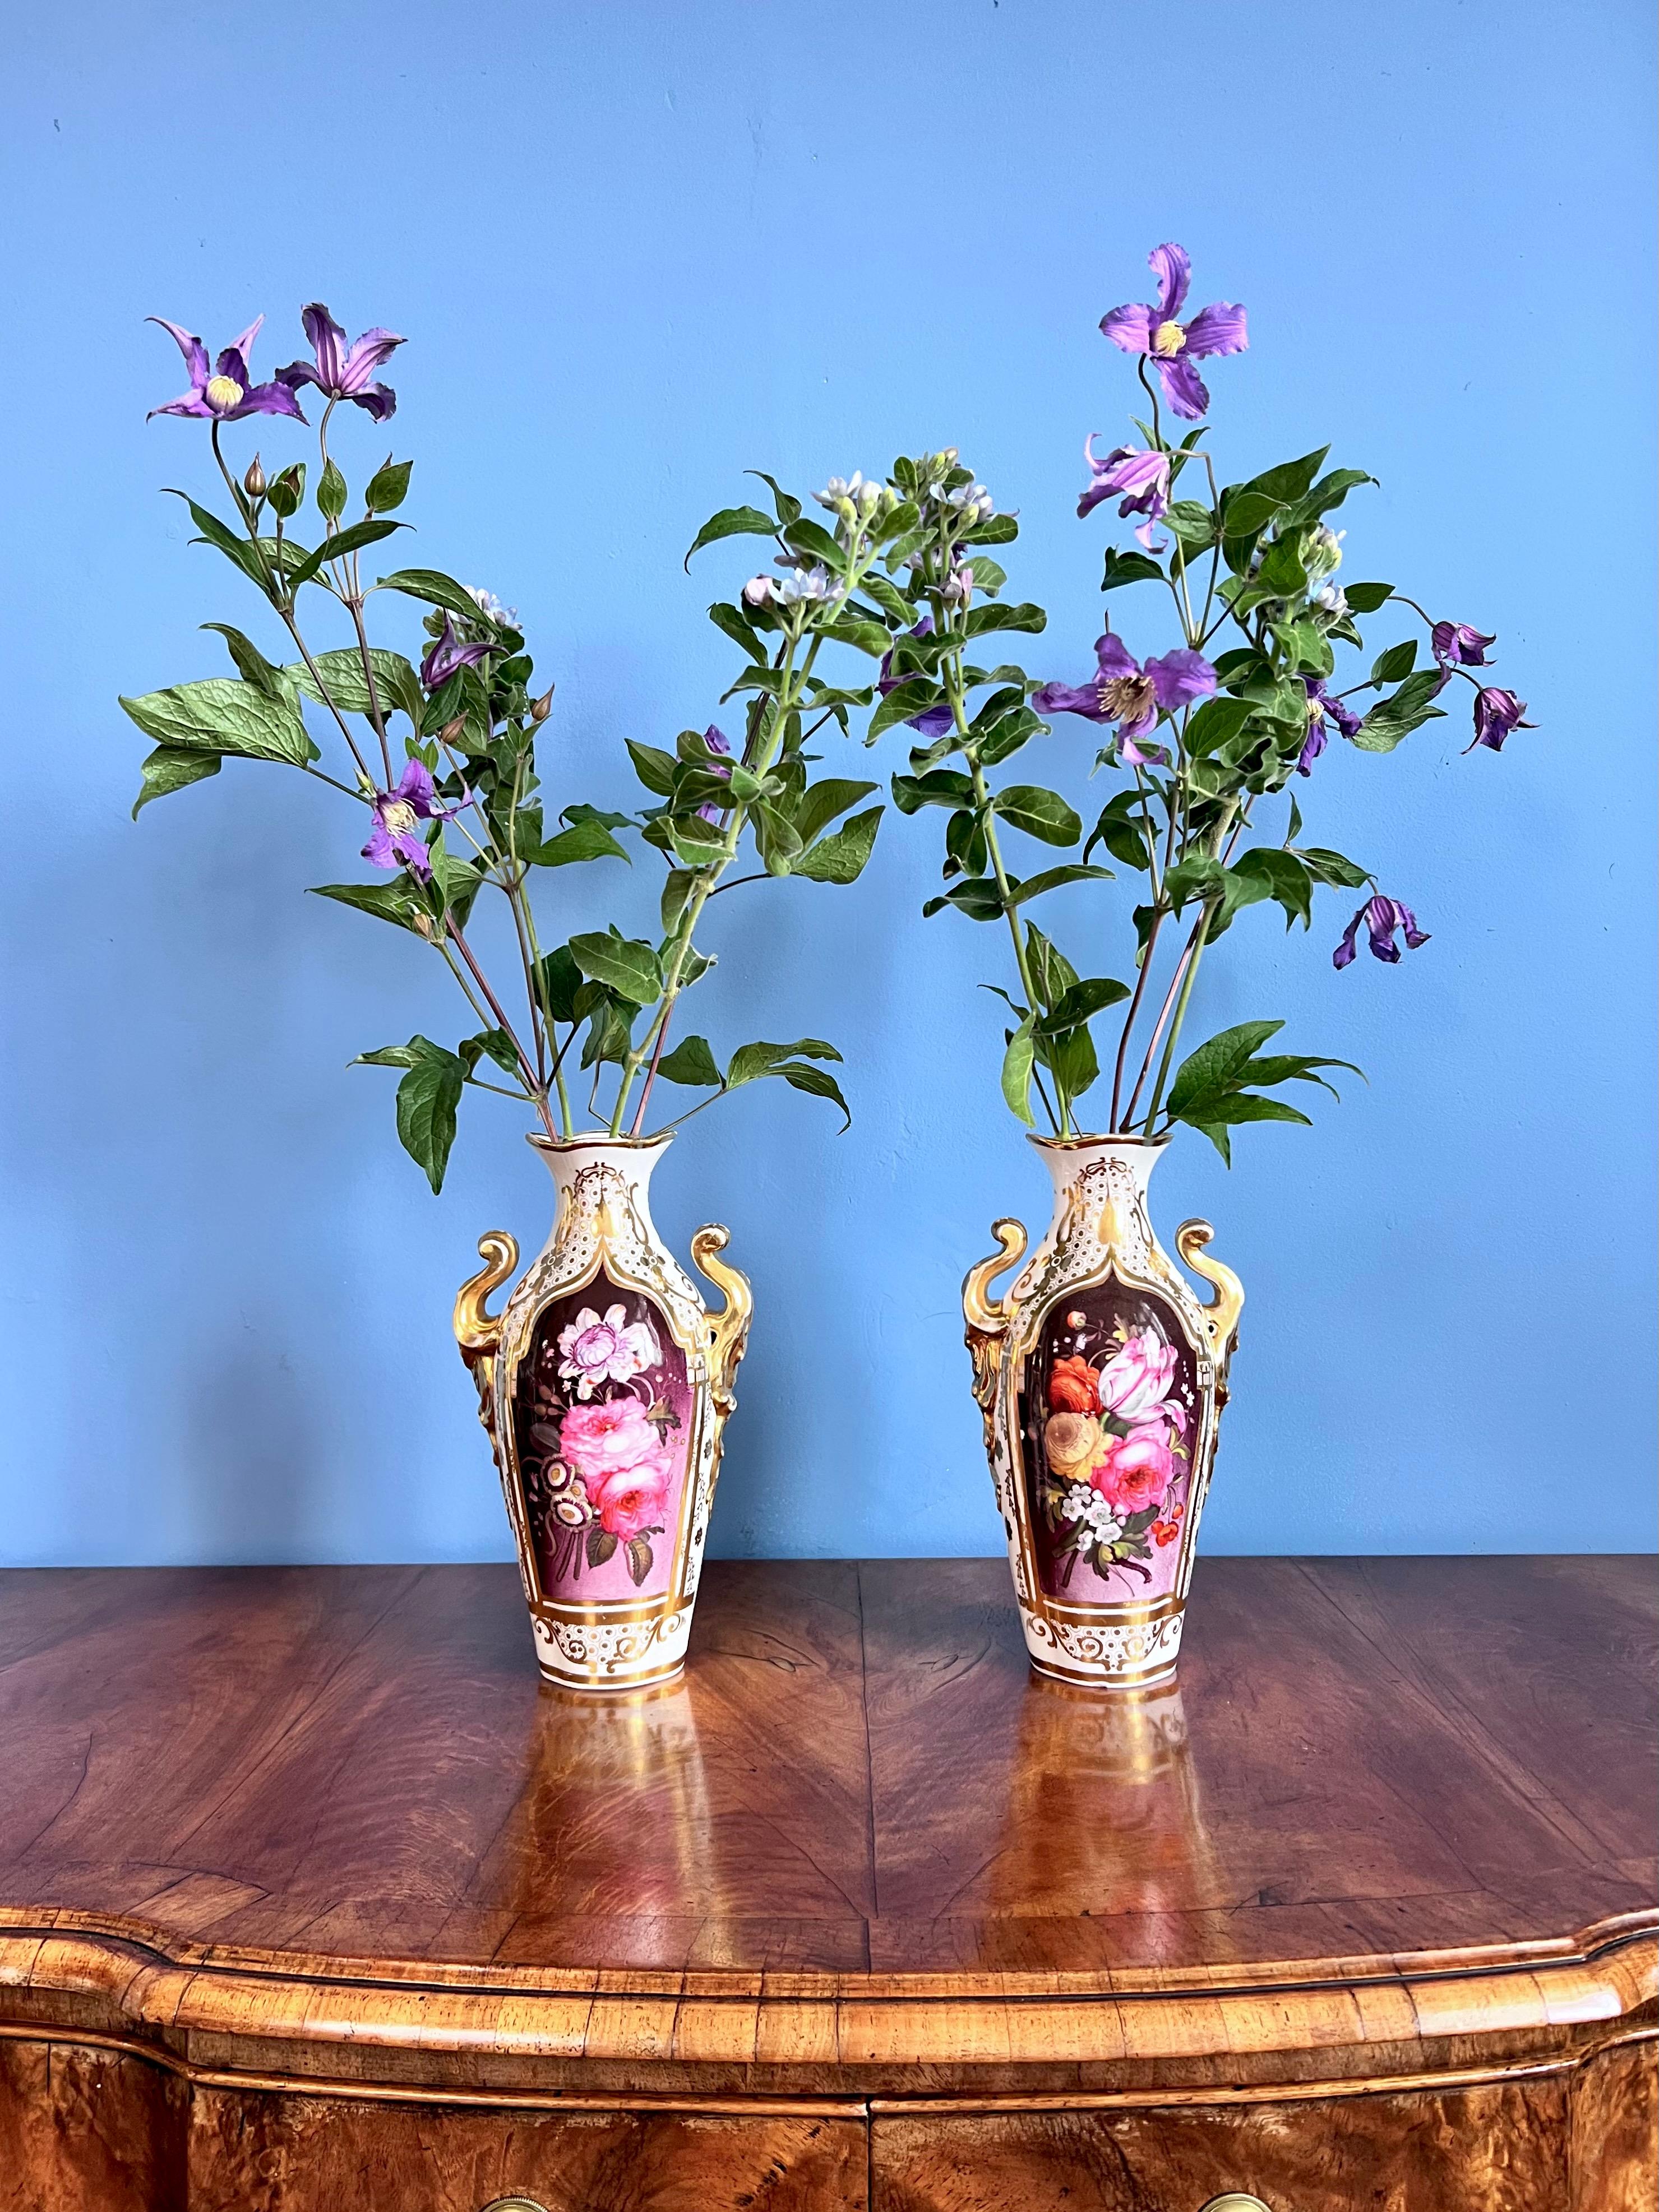 Il s'agit d'une paire de vases étonnante et très rare, fabriquée par Coalport vers 1845. Les vases présentent une riche dorure dans le style néo-persan, associée à des réserves florales très anglaises de bouquets de fleurs peints librement sur un